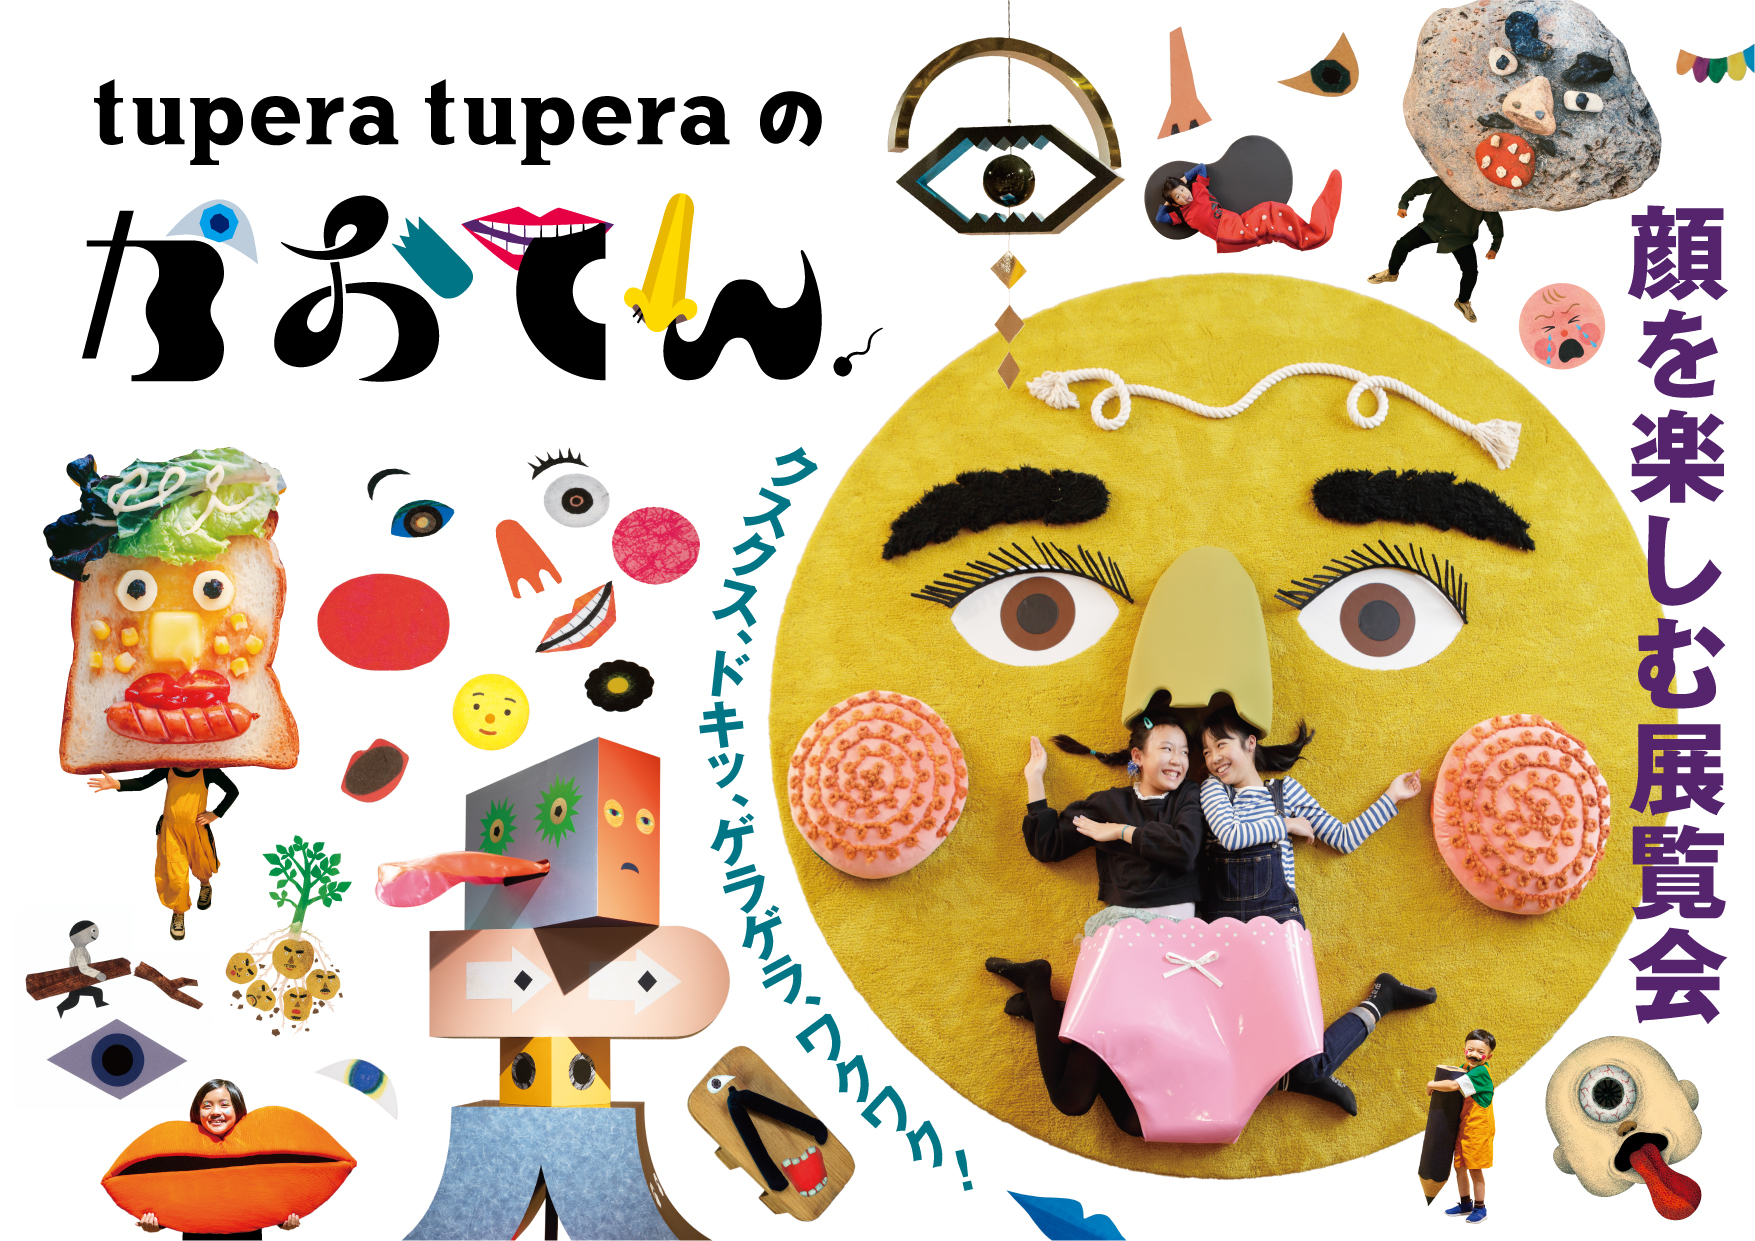 【だきます】 【新潟県民会館】tupera tuperaのかおてん/平日限定/ツペラツペラ のため